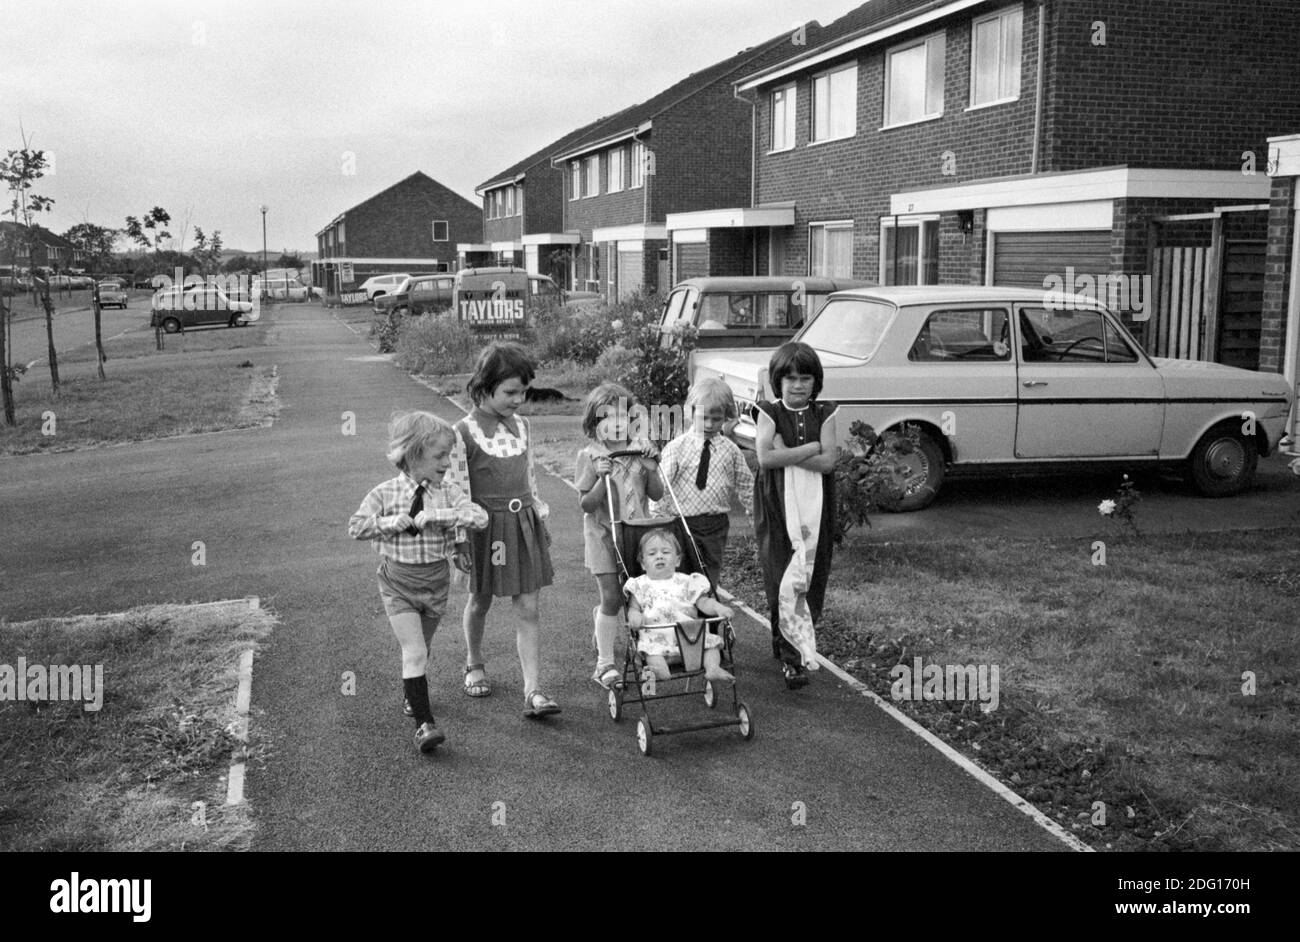 Kinder aus den 70er Jahren Großbritannien. Eine Gruppe von kleinen Kindern, die zu den Geschäften gehen und die kleine Schwester in ihren Kinderwagen schieben. Sie sind sehr elegant gekleidet, leben in einer modernen Wohnsiedlung England 1977 HOMER SYKES Stockfoto